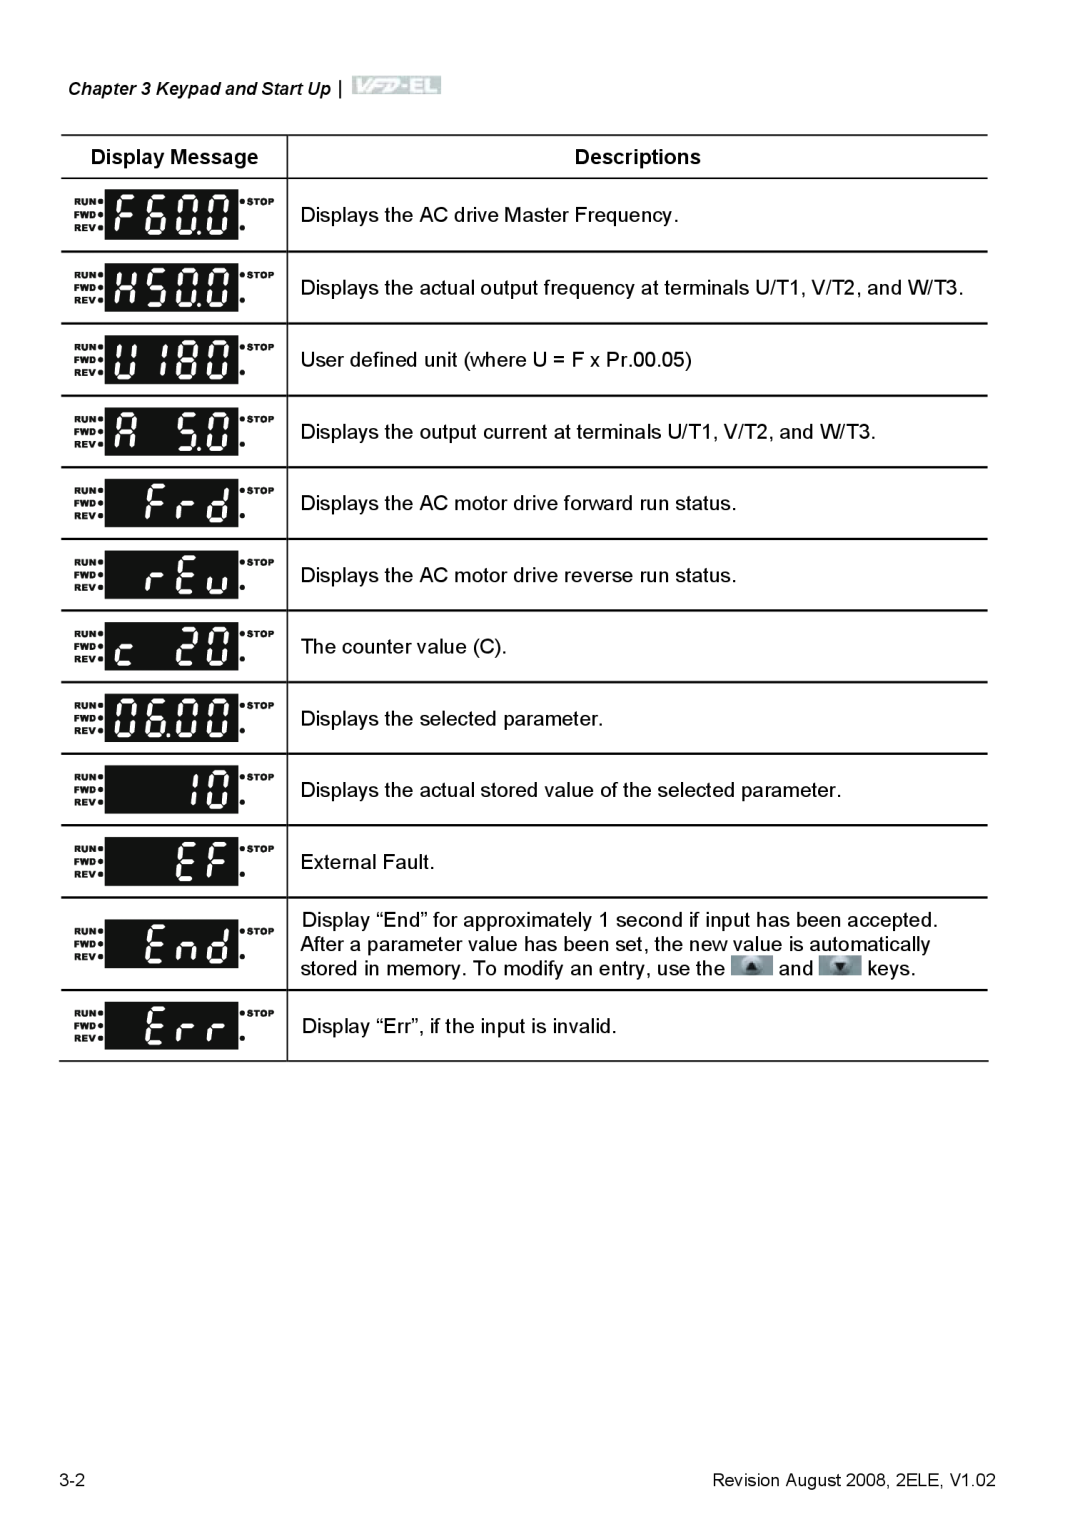 Delta Electronics VFD-EL manual Display Message, Descriptions 